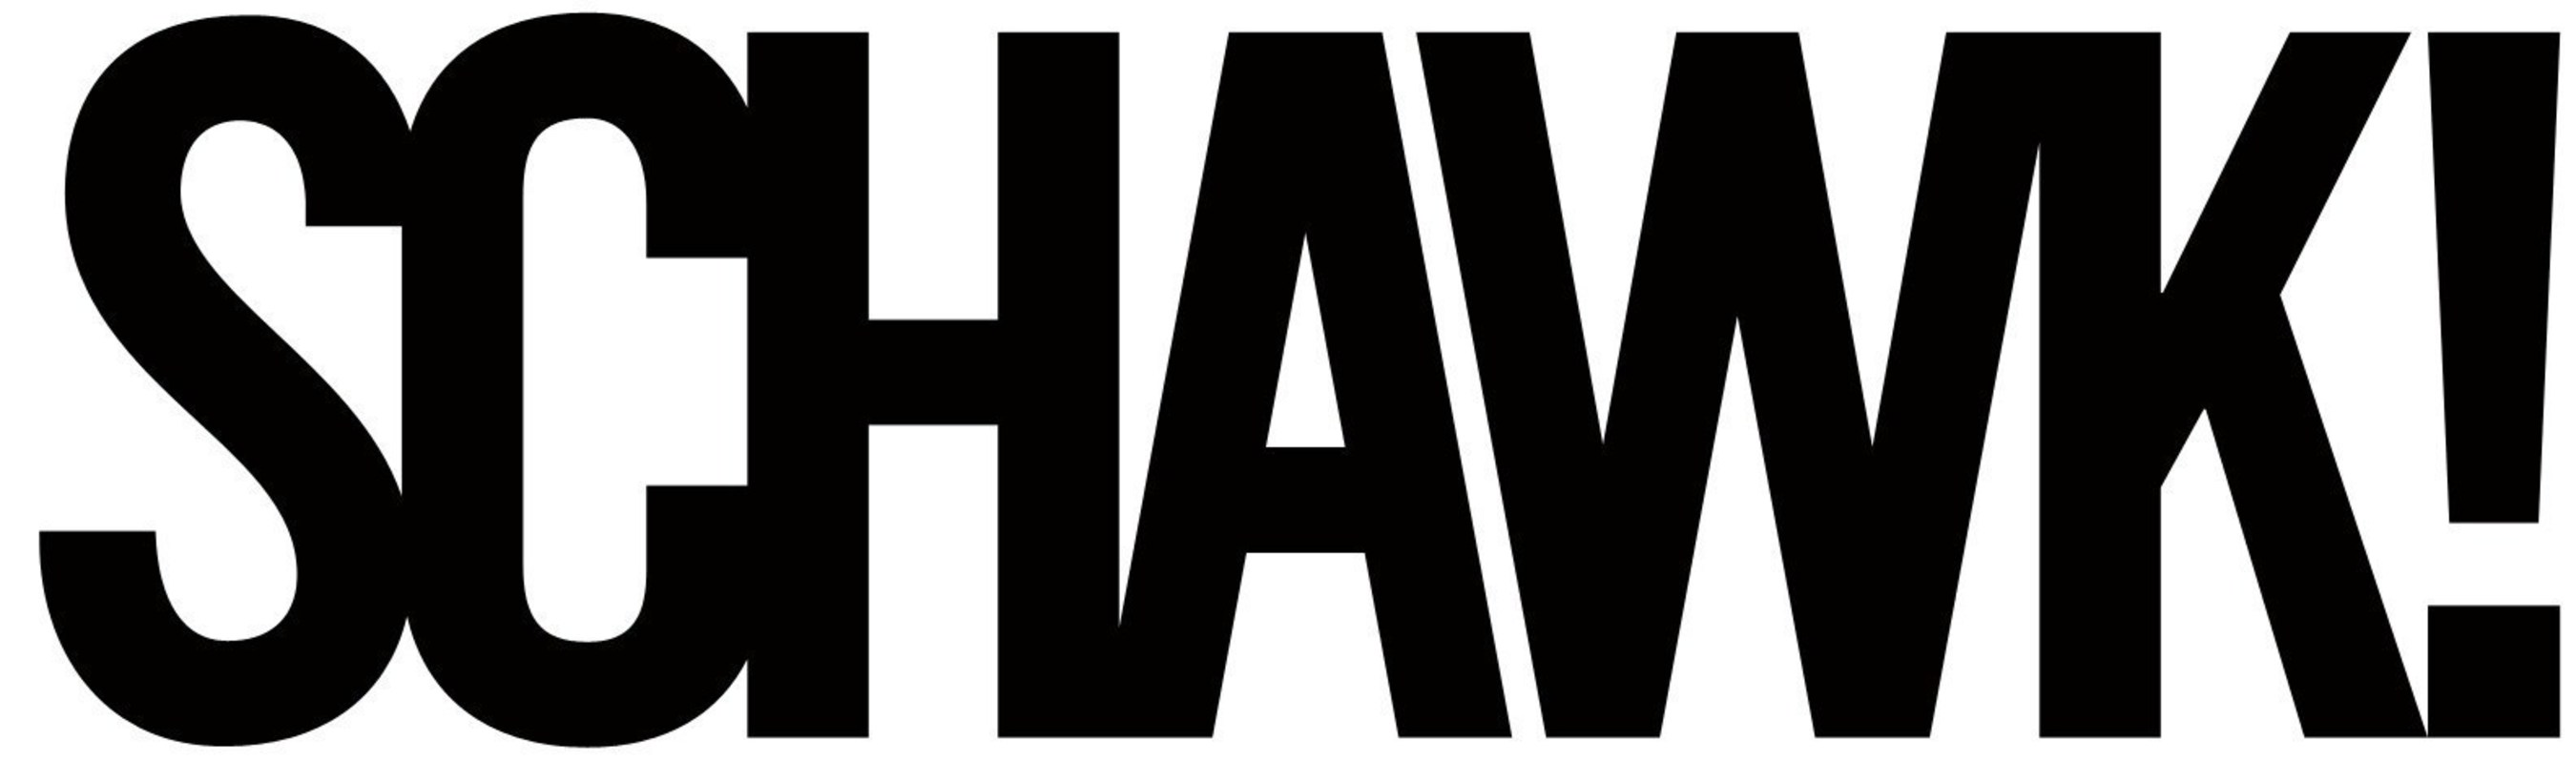 Schawk! Logo